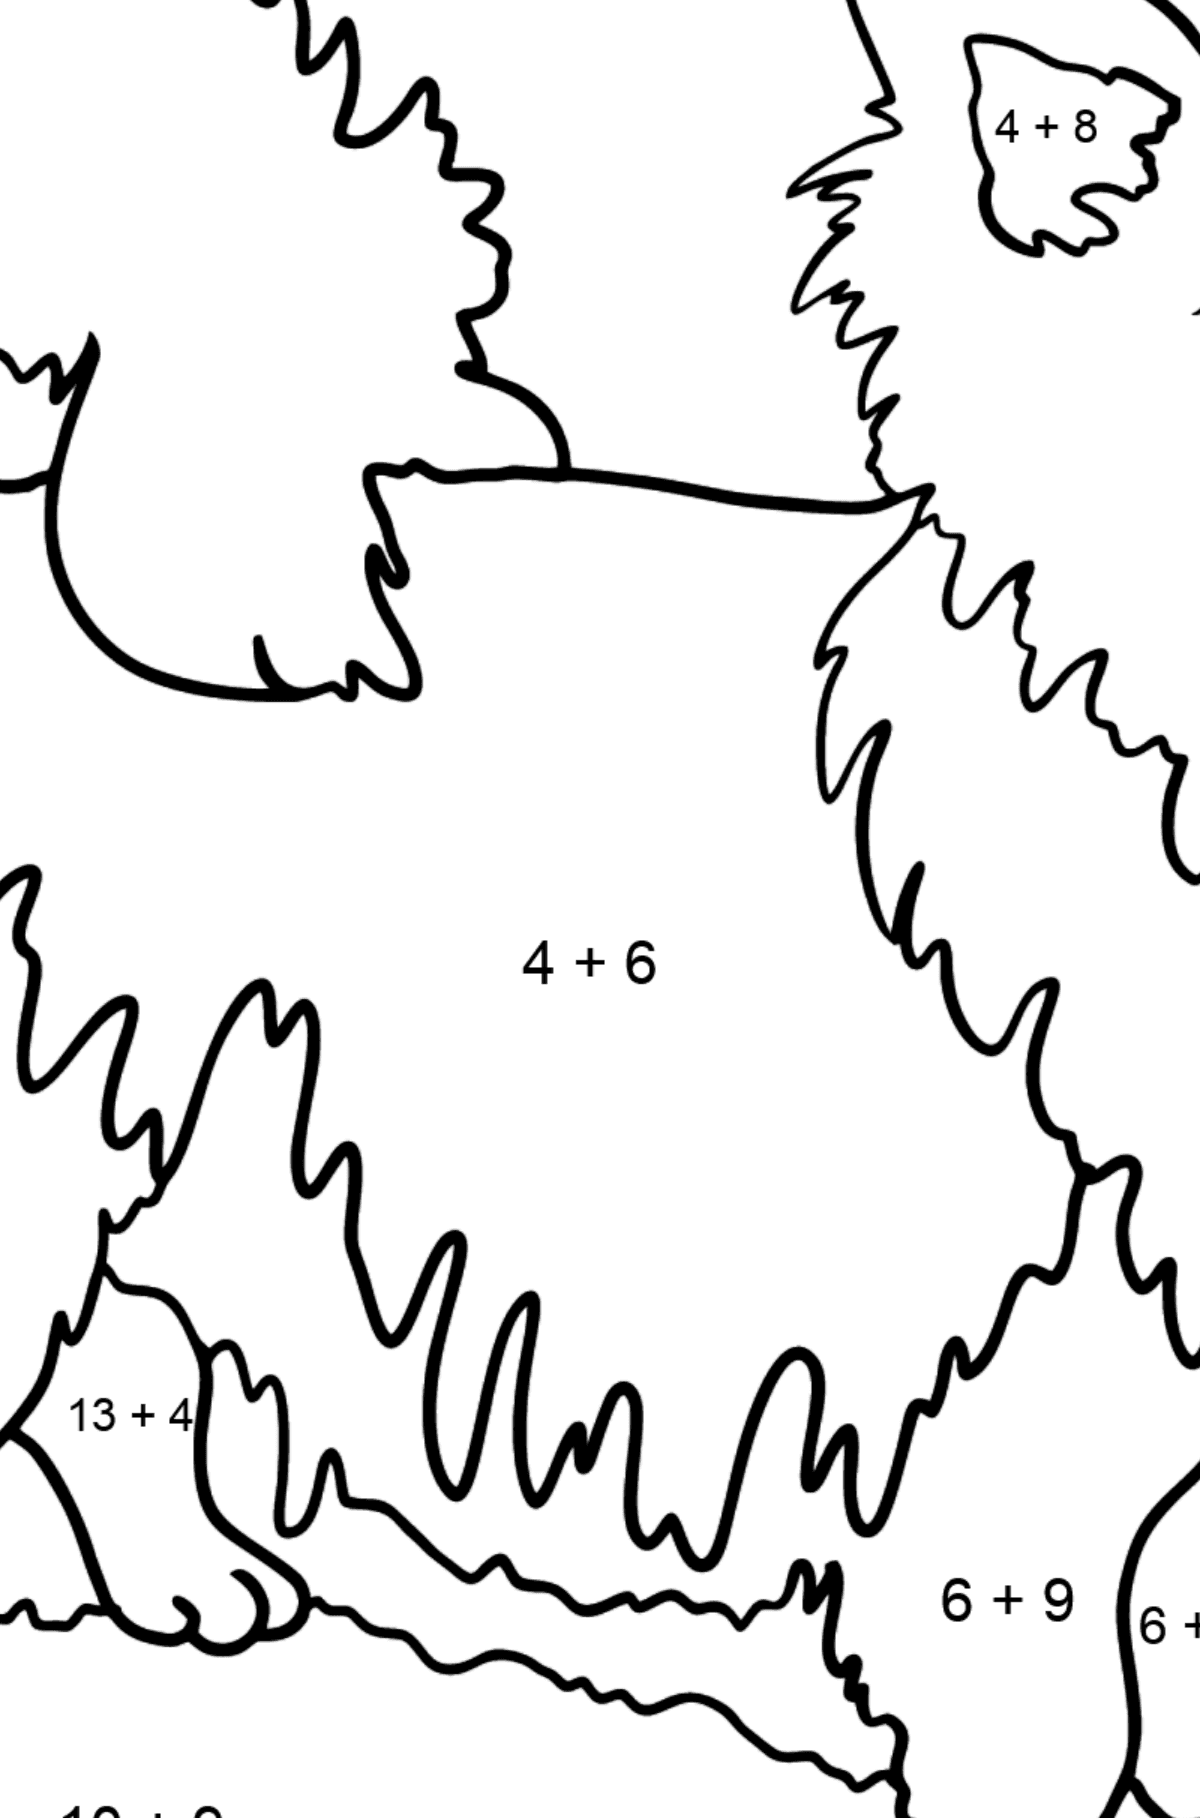 Desenho para colorir de chihuahua - Colorindo com Matemática - Soma para Crianças